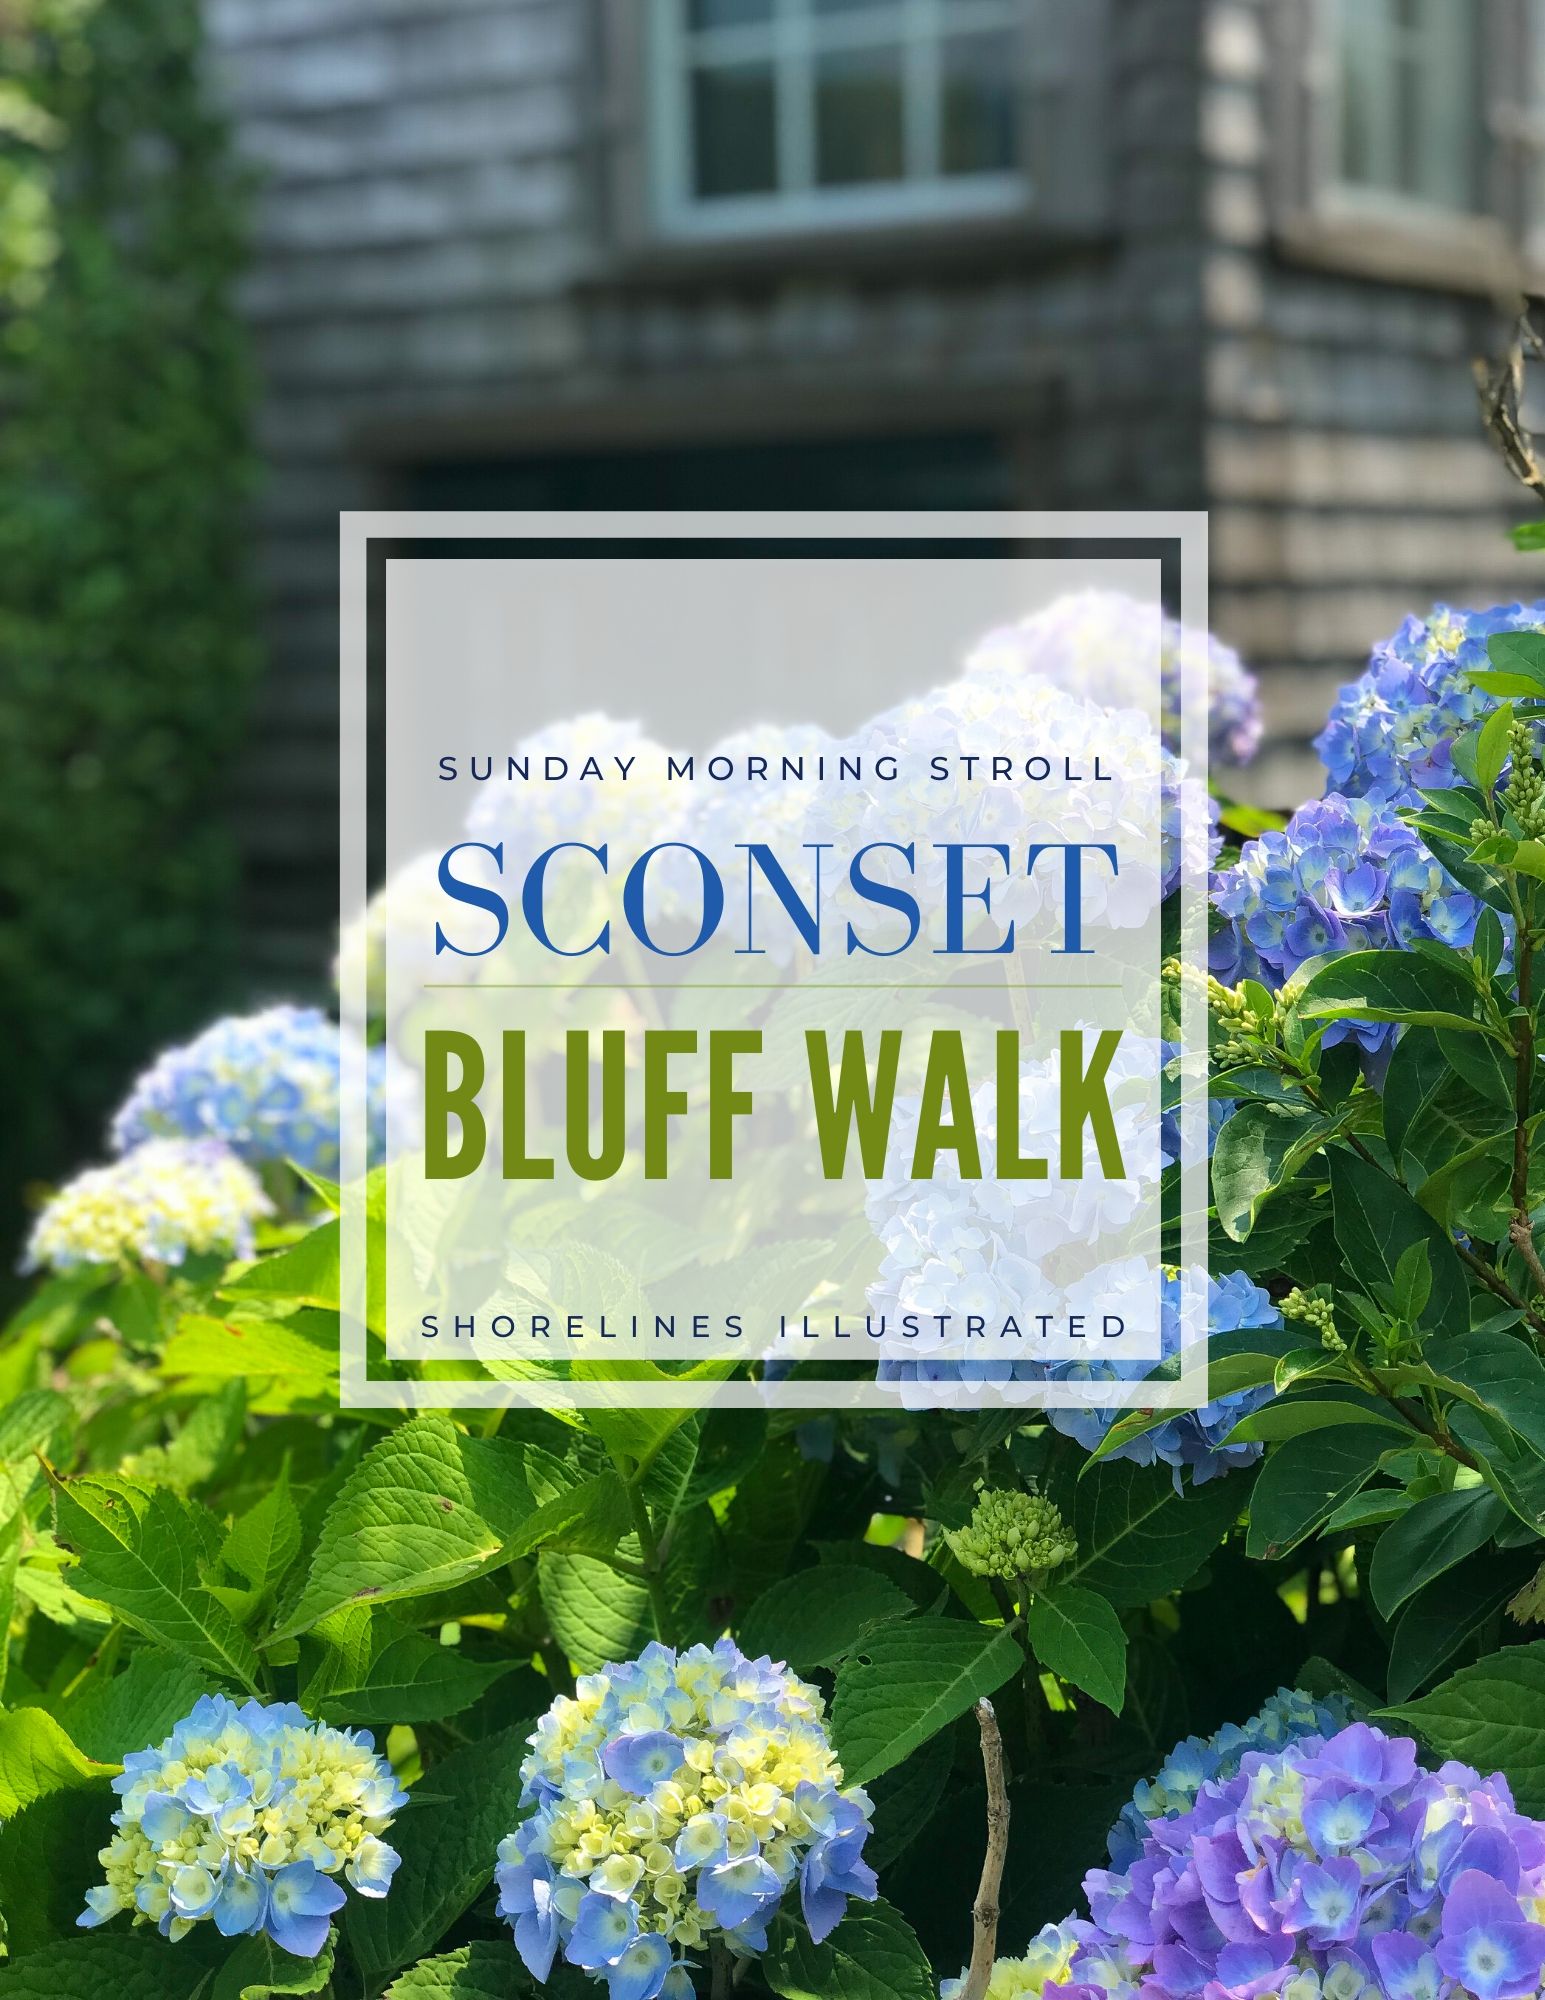 The Sconset Bluff Walk Siasconset Nantucket-1